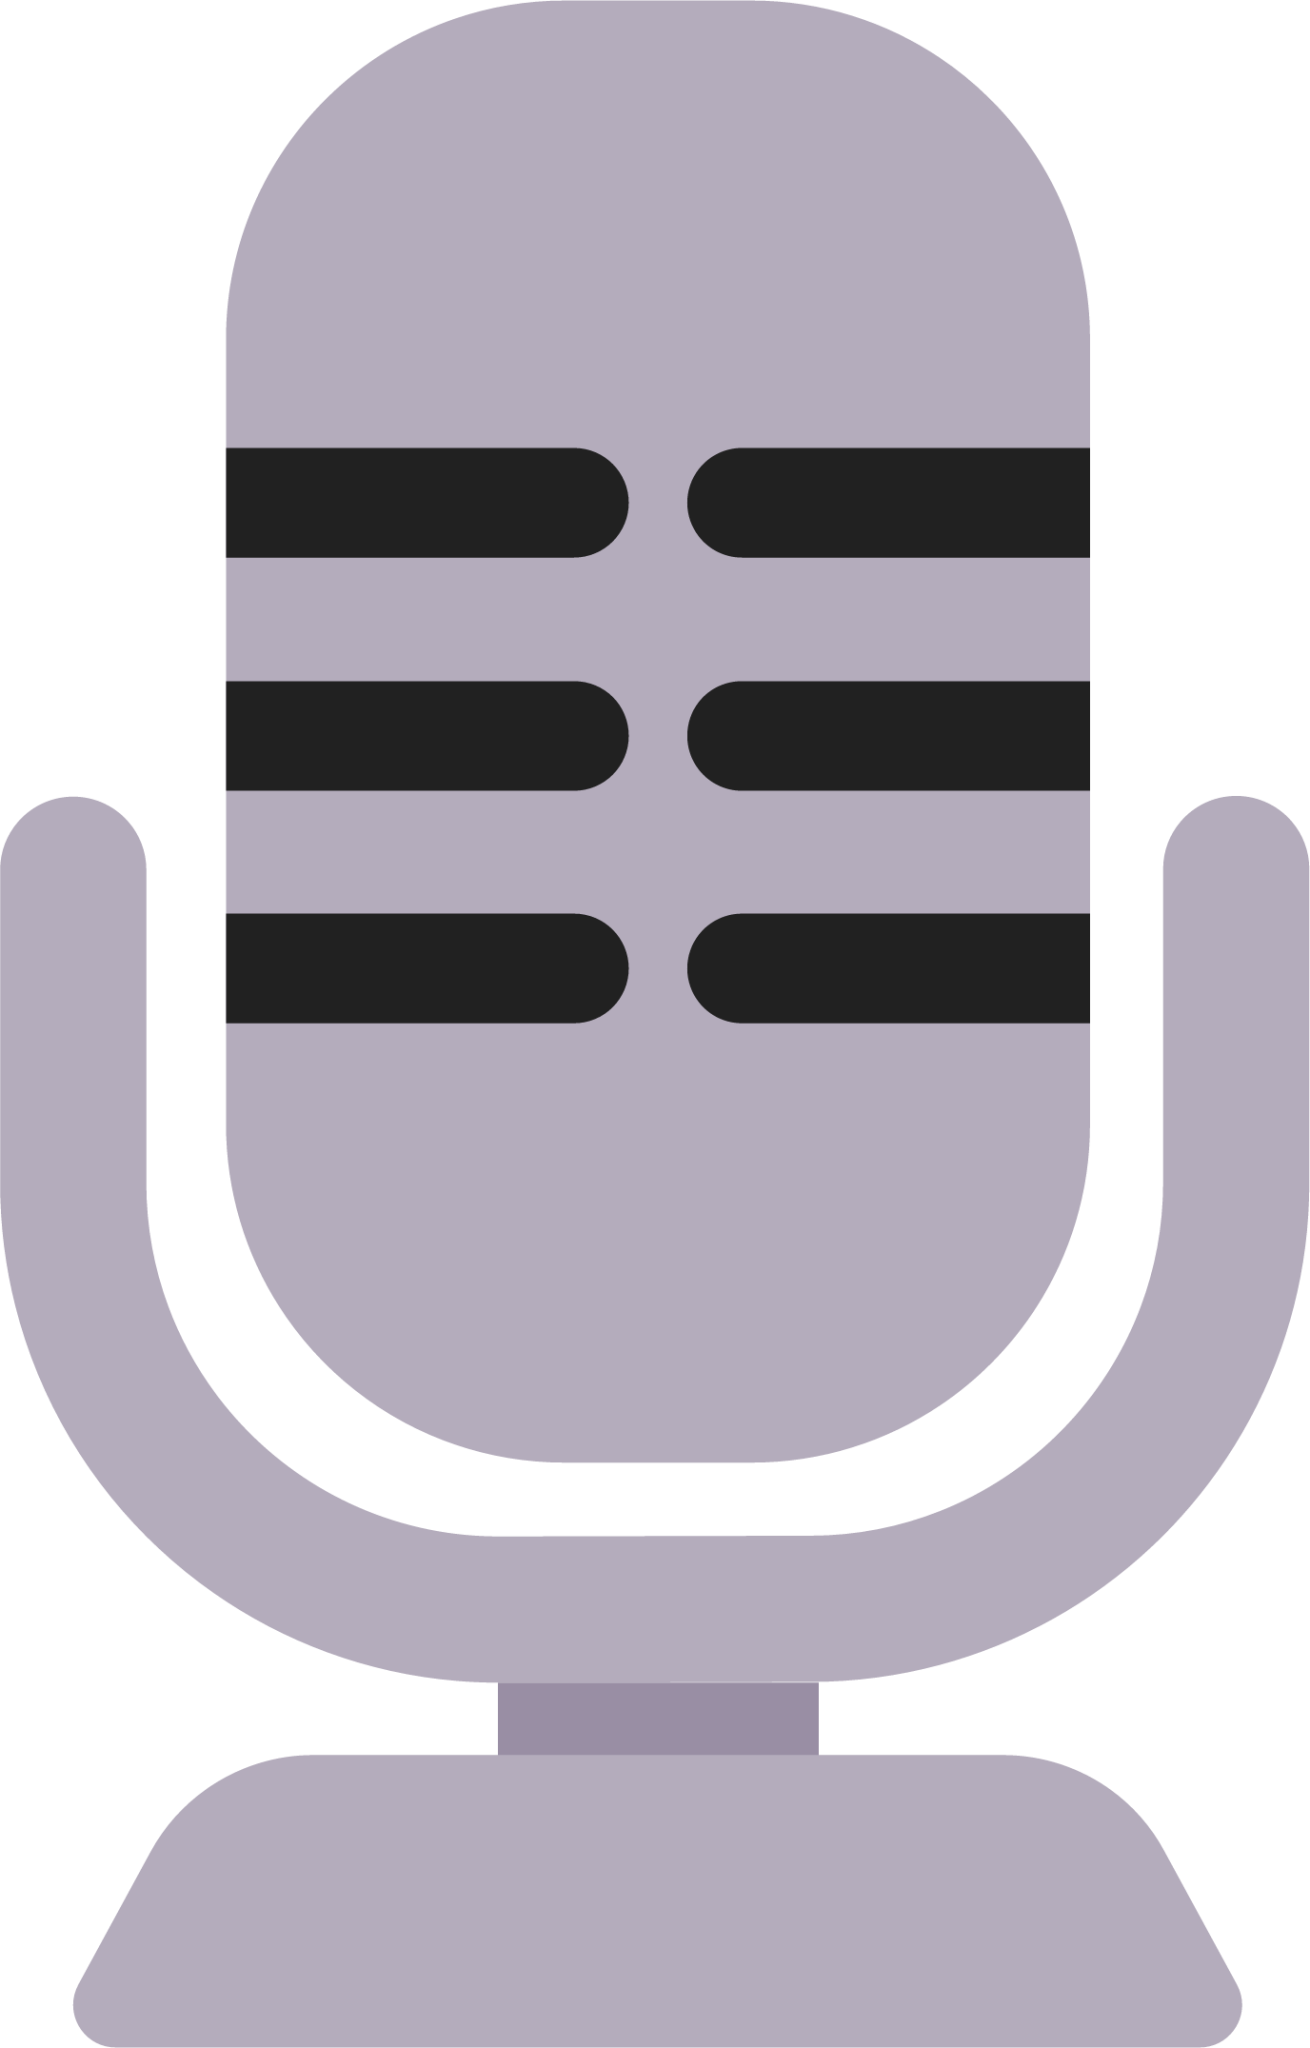 studio microphone emoji